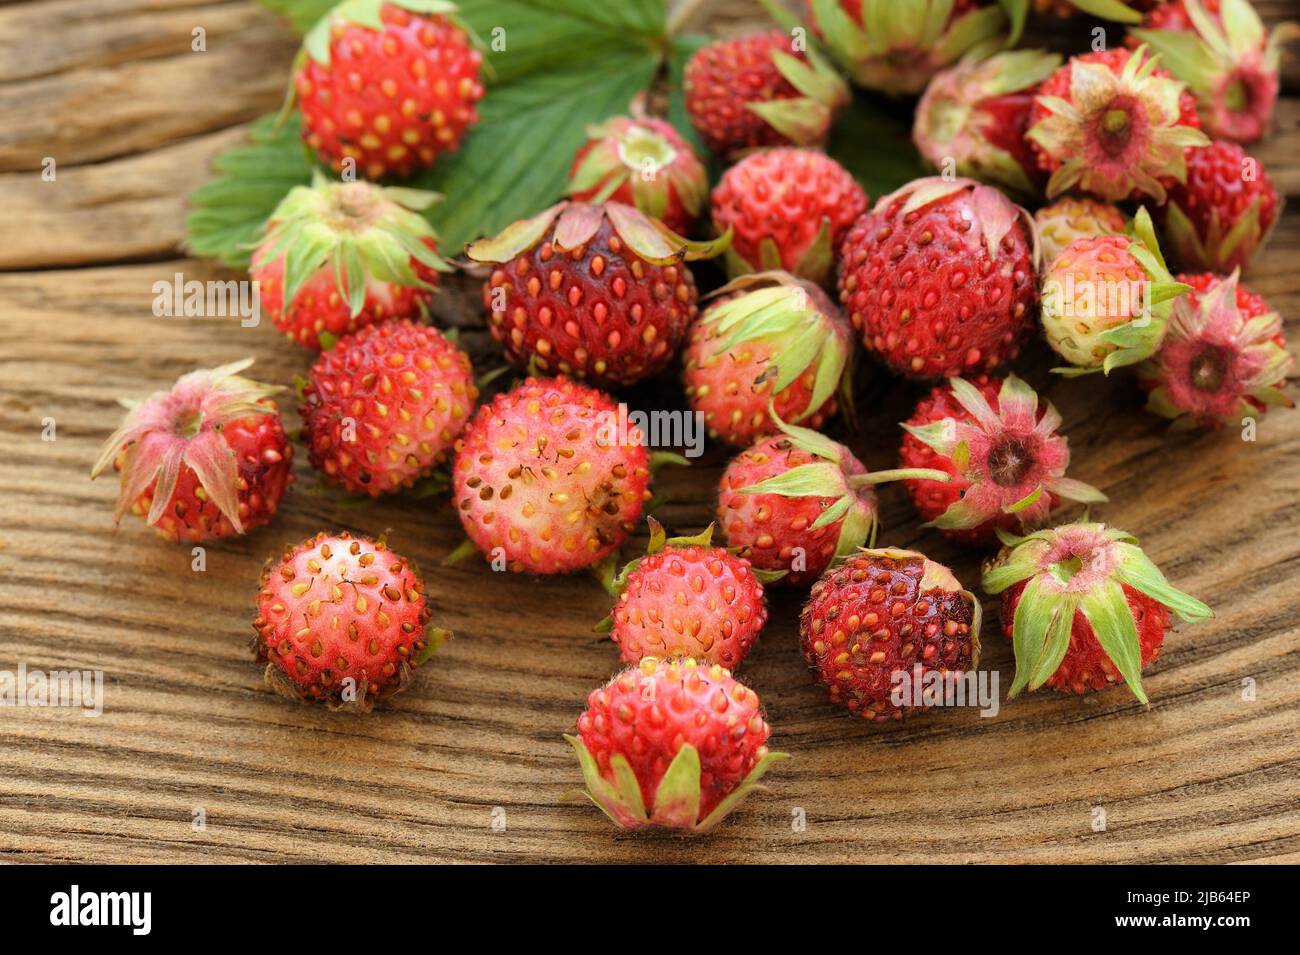 Wild strawberries Fragaria viridis on wooden background closeup Stock Photo